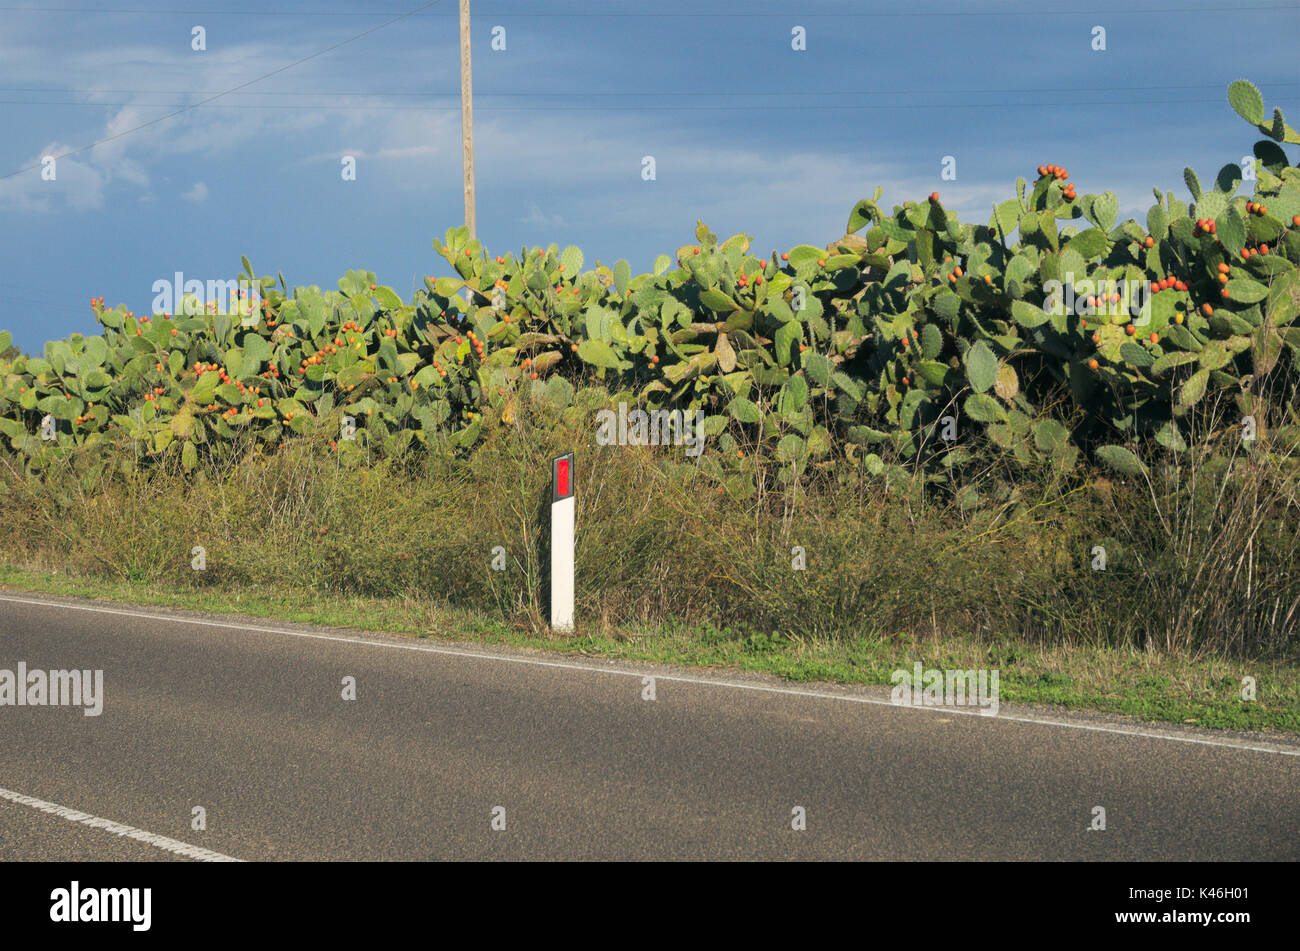 Fig indien, figuier de Barbarie (opuntia ficus-indica, opuntia ficus-barbarica) le long de la route et un marqueur de route, Sardaigne, Italie Banque D'Images